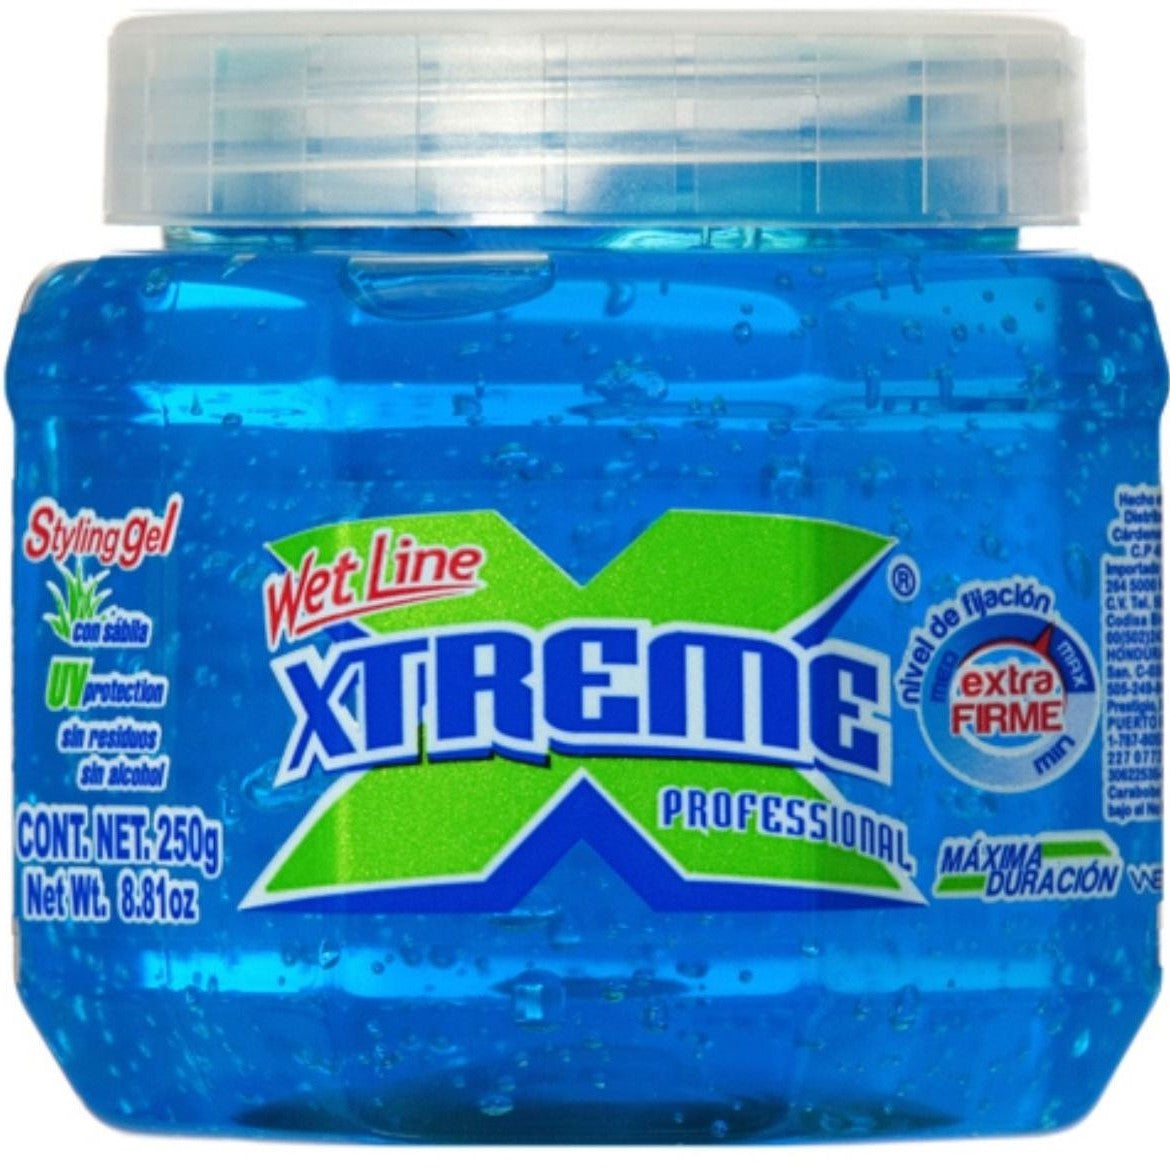 Wet Line Xtreme Professional Styling Gel Extra Halten Sie Blau, 8,8 oz / 250 ml